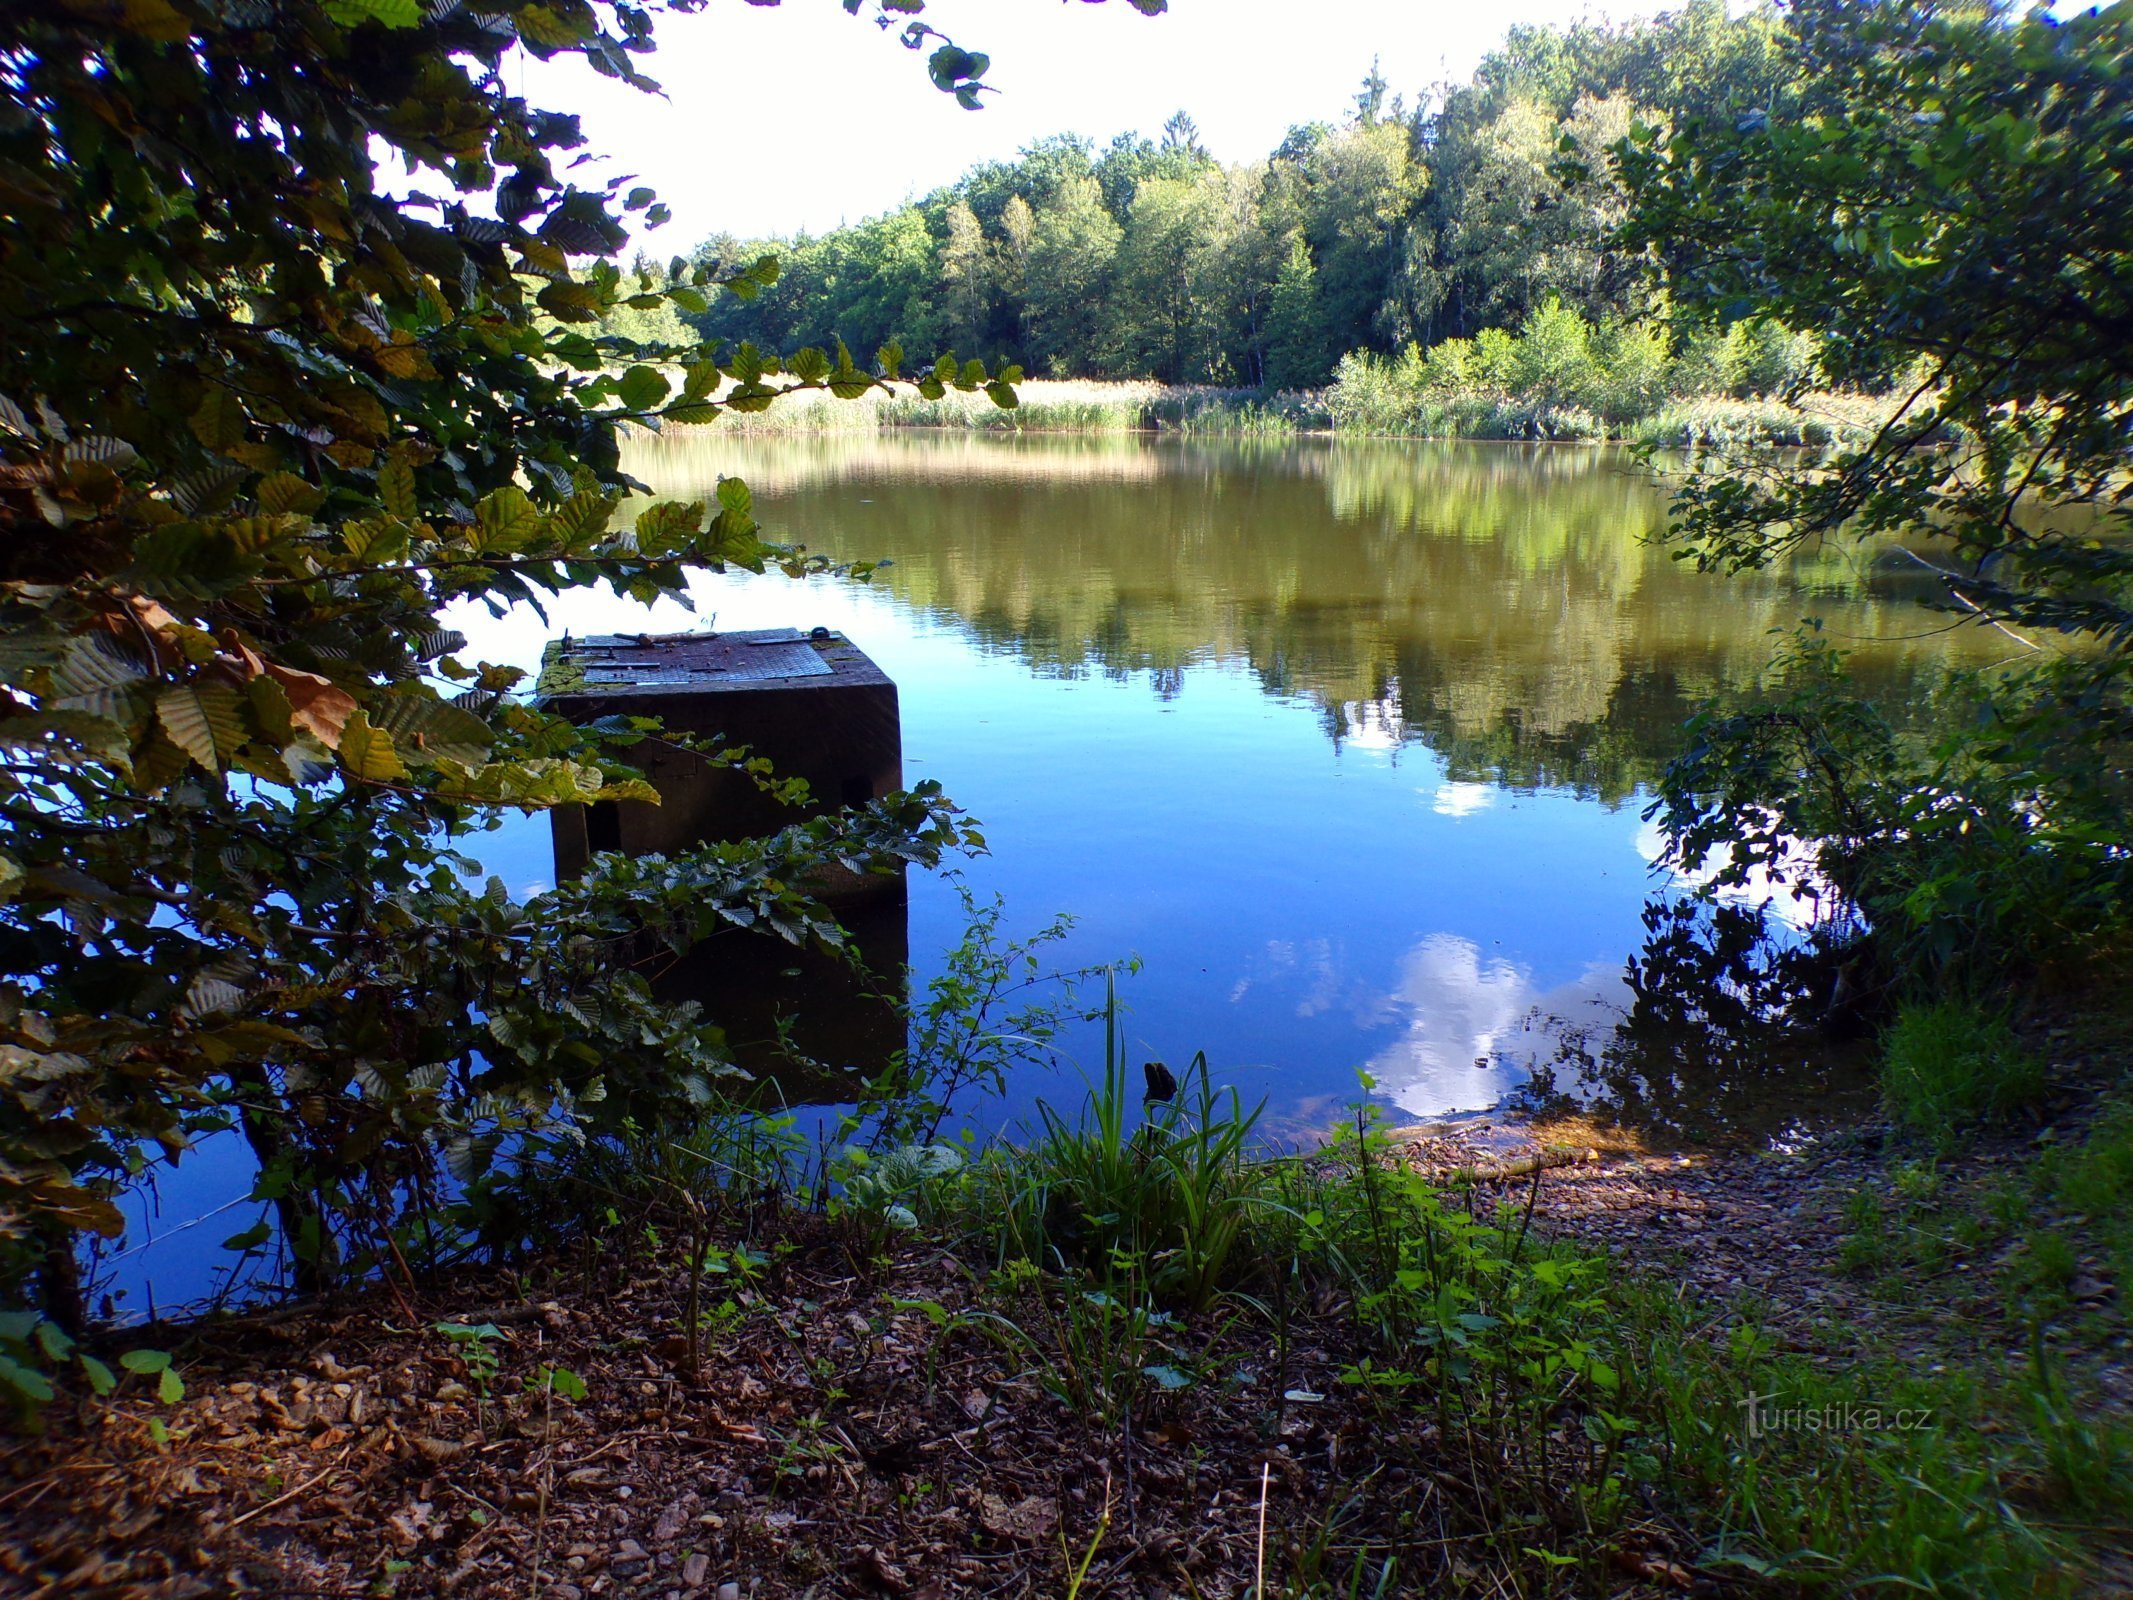 Hlinský rybník (Petrovice nad Orlicí, 1.9.2022/XNUMX/XNUMX)